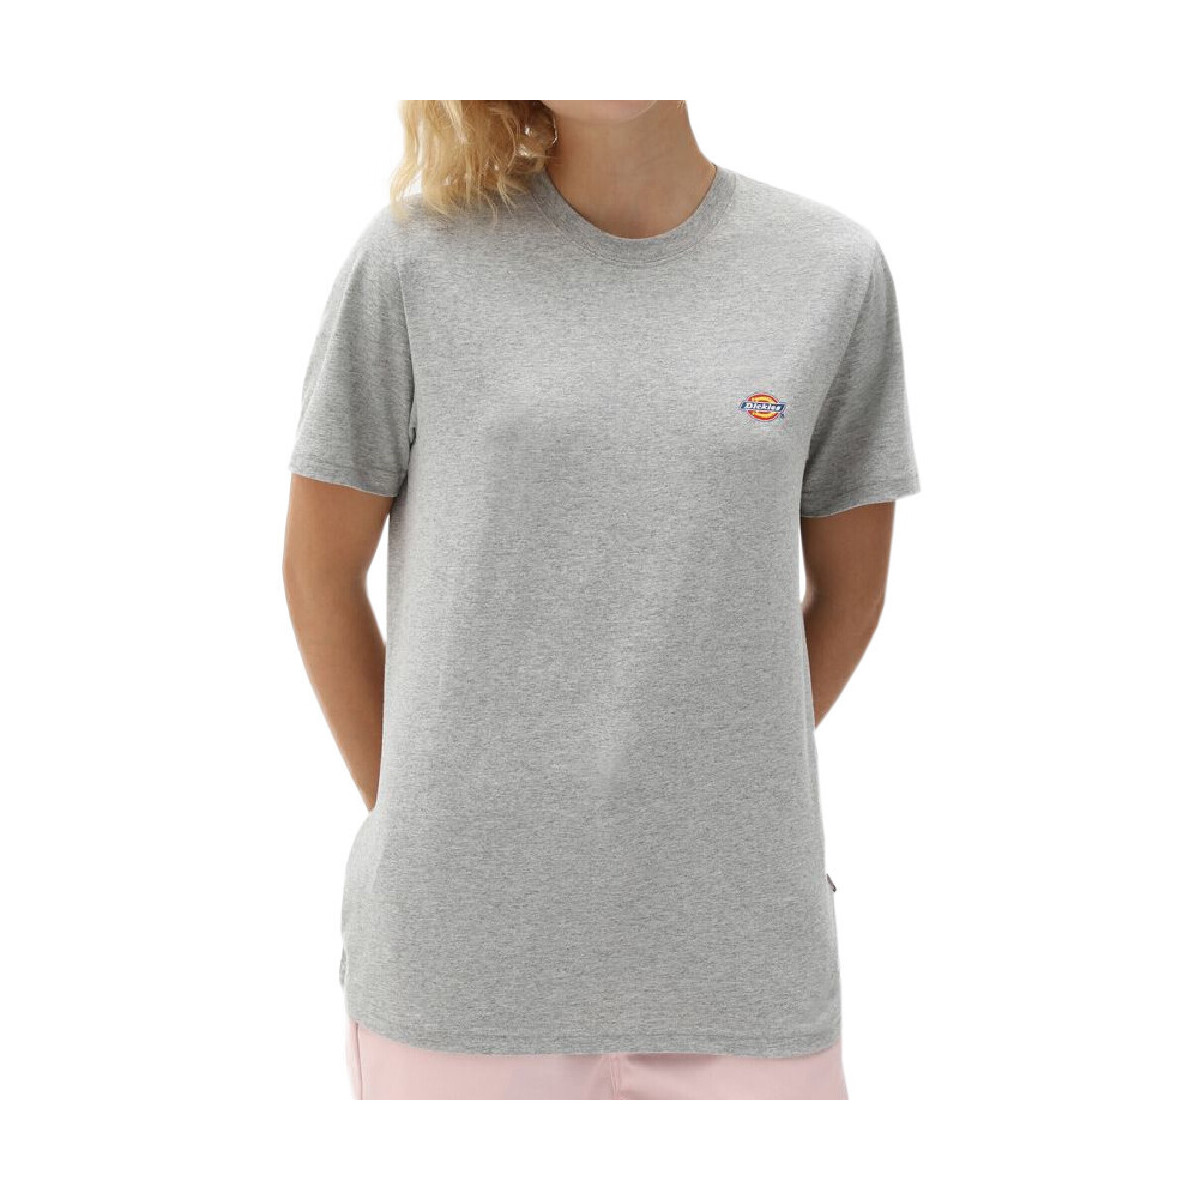 Vêtements Femme Ralph Lauren Kids logo-printed T-shirt dress DK0A4XDAGYM1 Gris